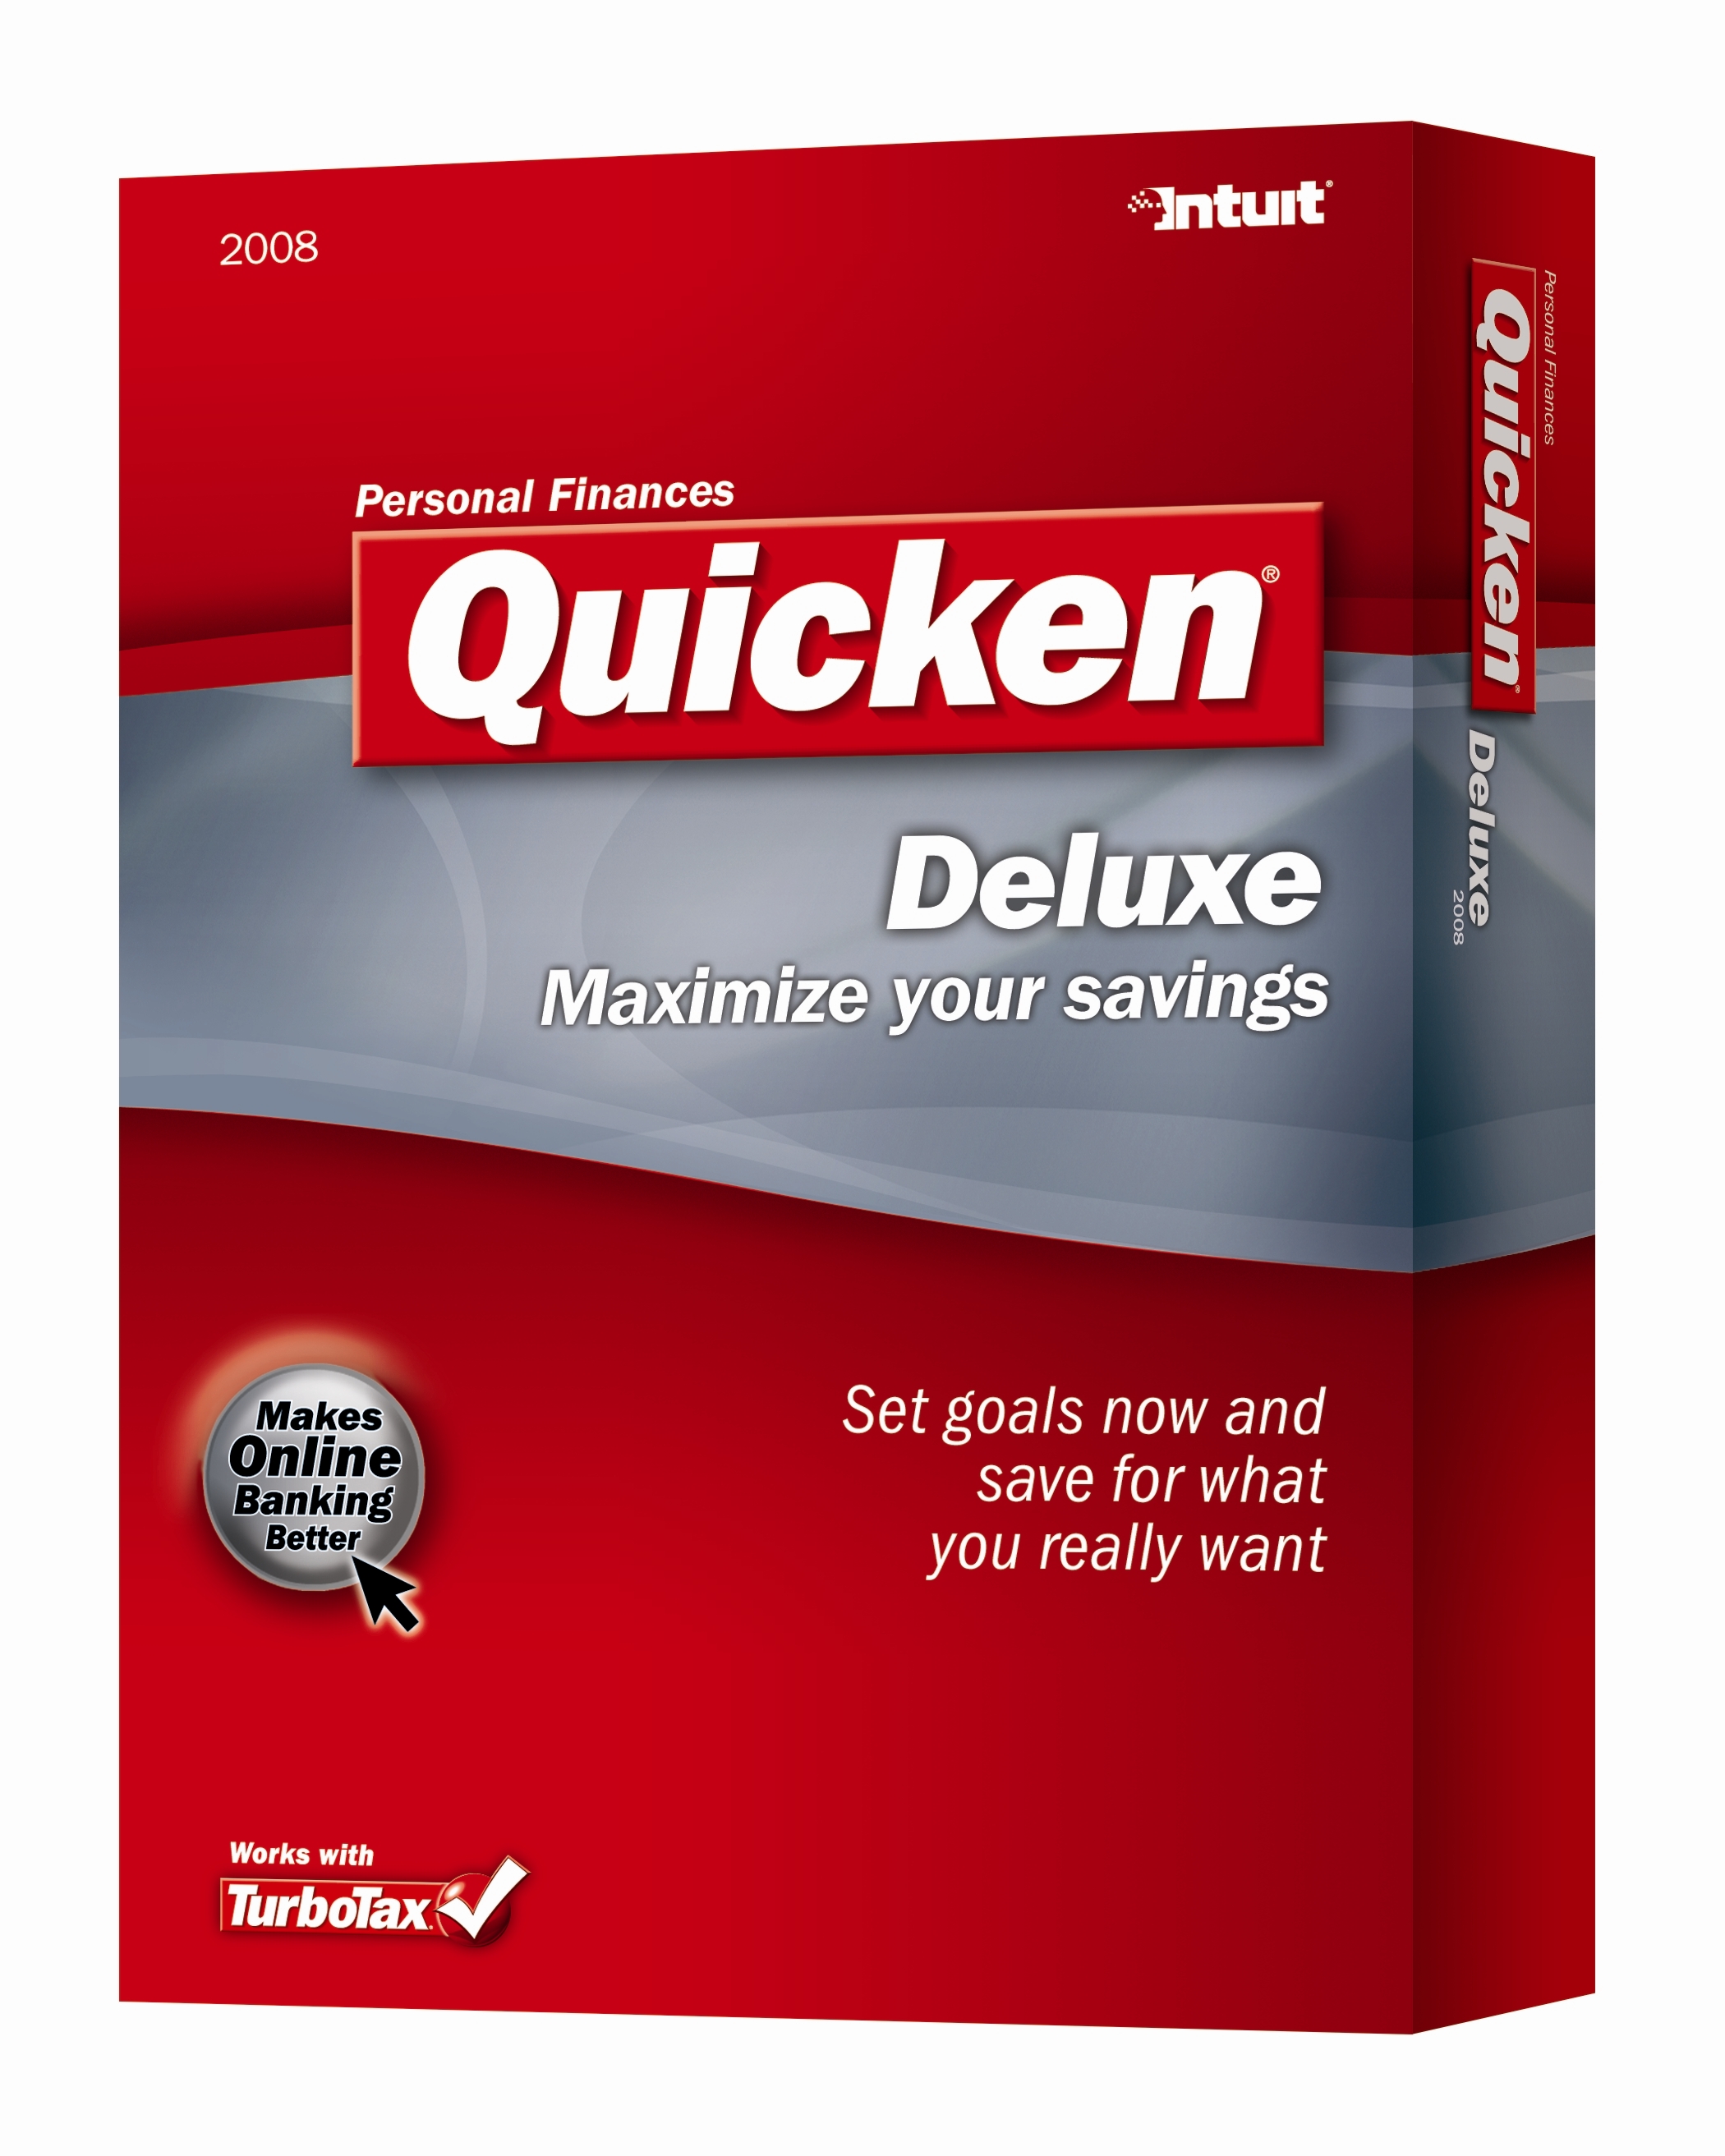 電腦魔法大師之電腦手記 (2010 alpha): Quicken Deluxe 2009 個人財務管理軟件